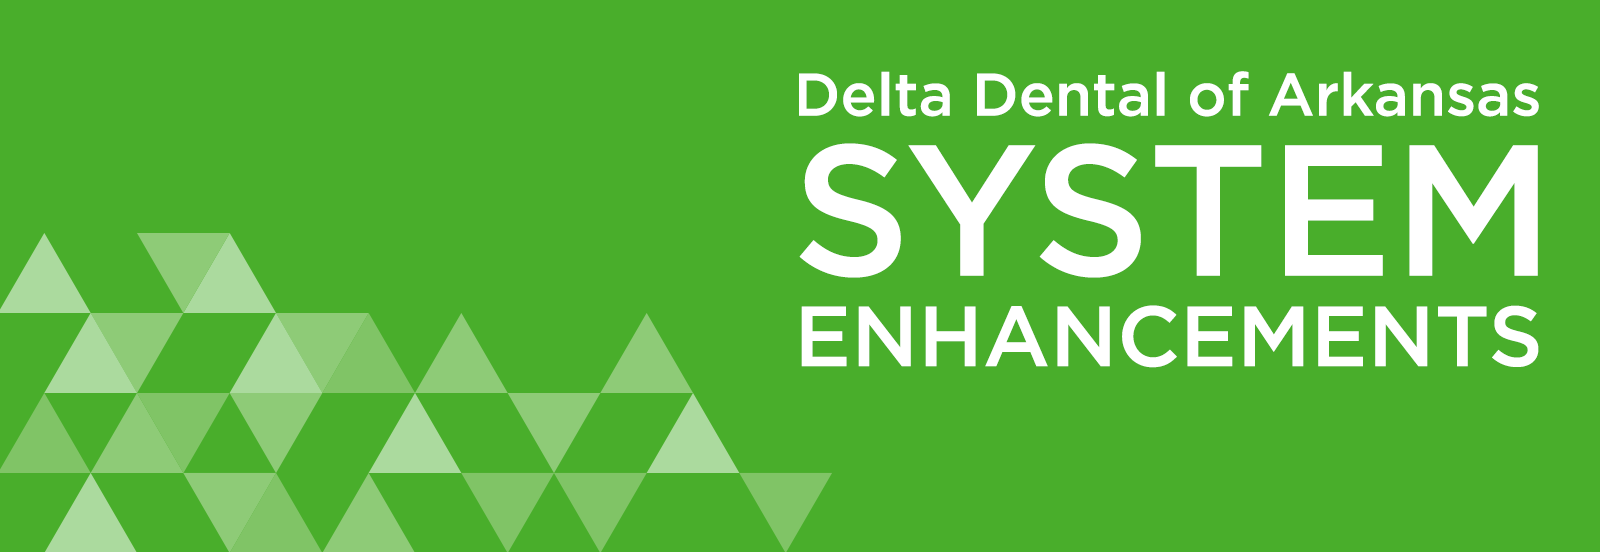 Delta Dental of Arkansas System Upgrade Header With Triangles